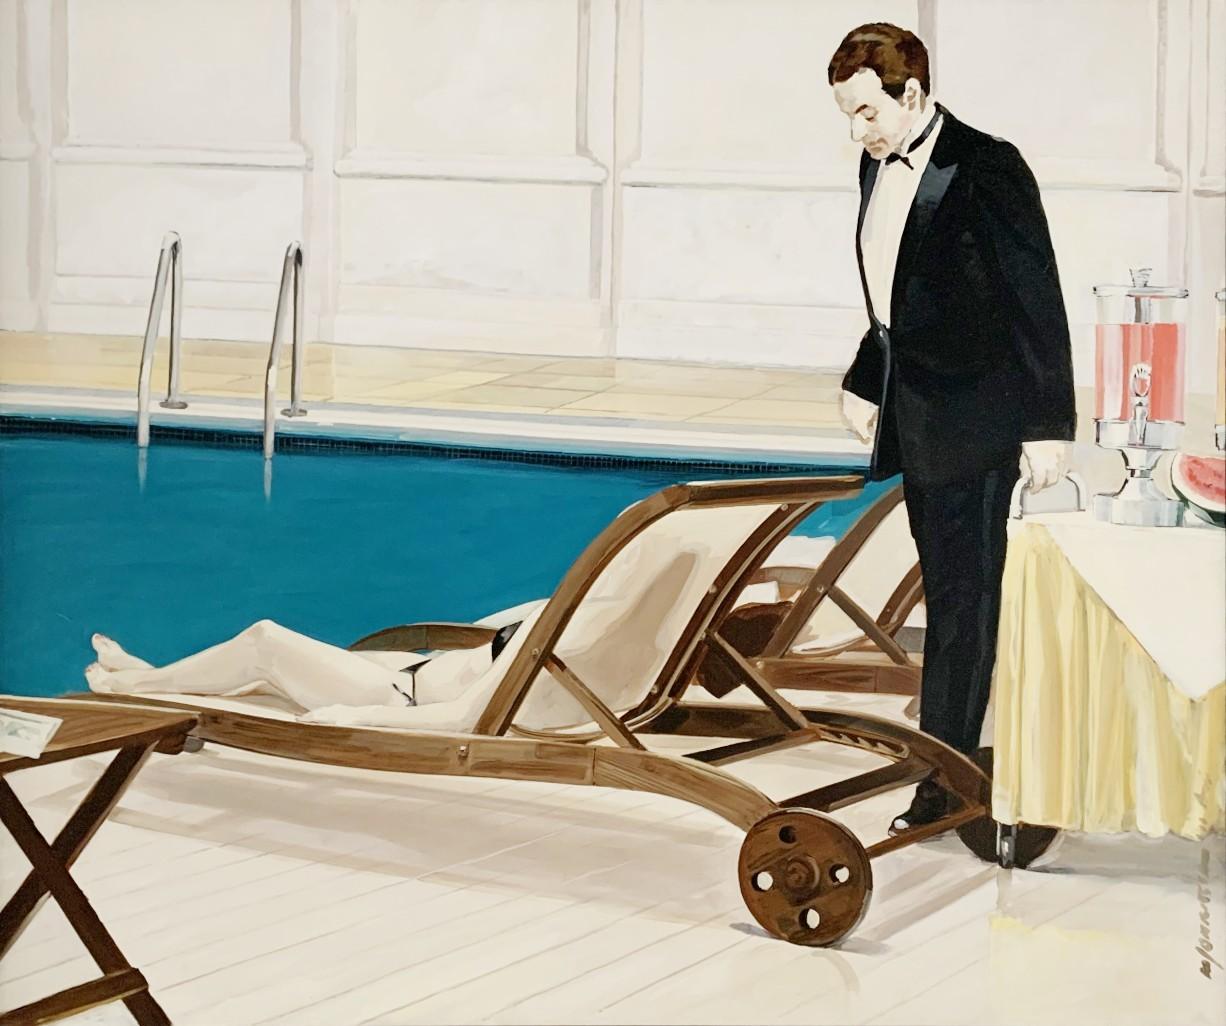 Marek Okrassa Nude Painting - Swimming pool - Oil on canvas, Figurative realist painting, Polish art